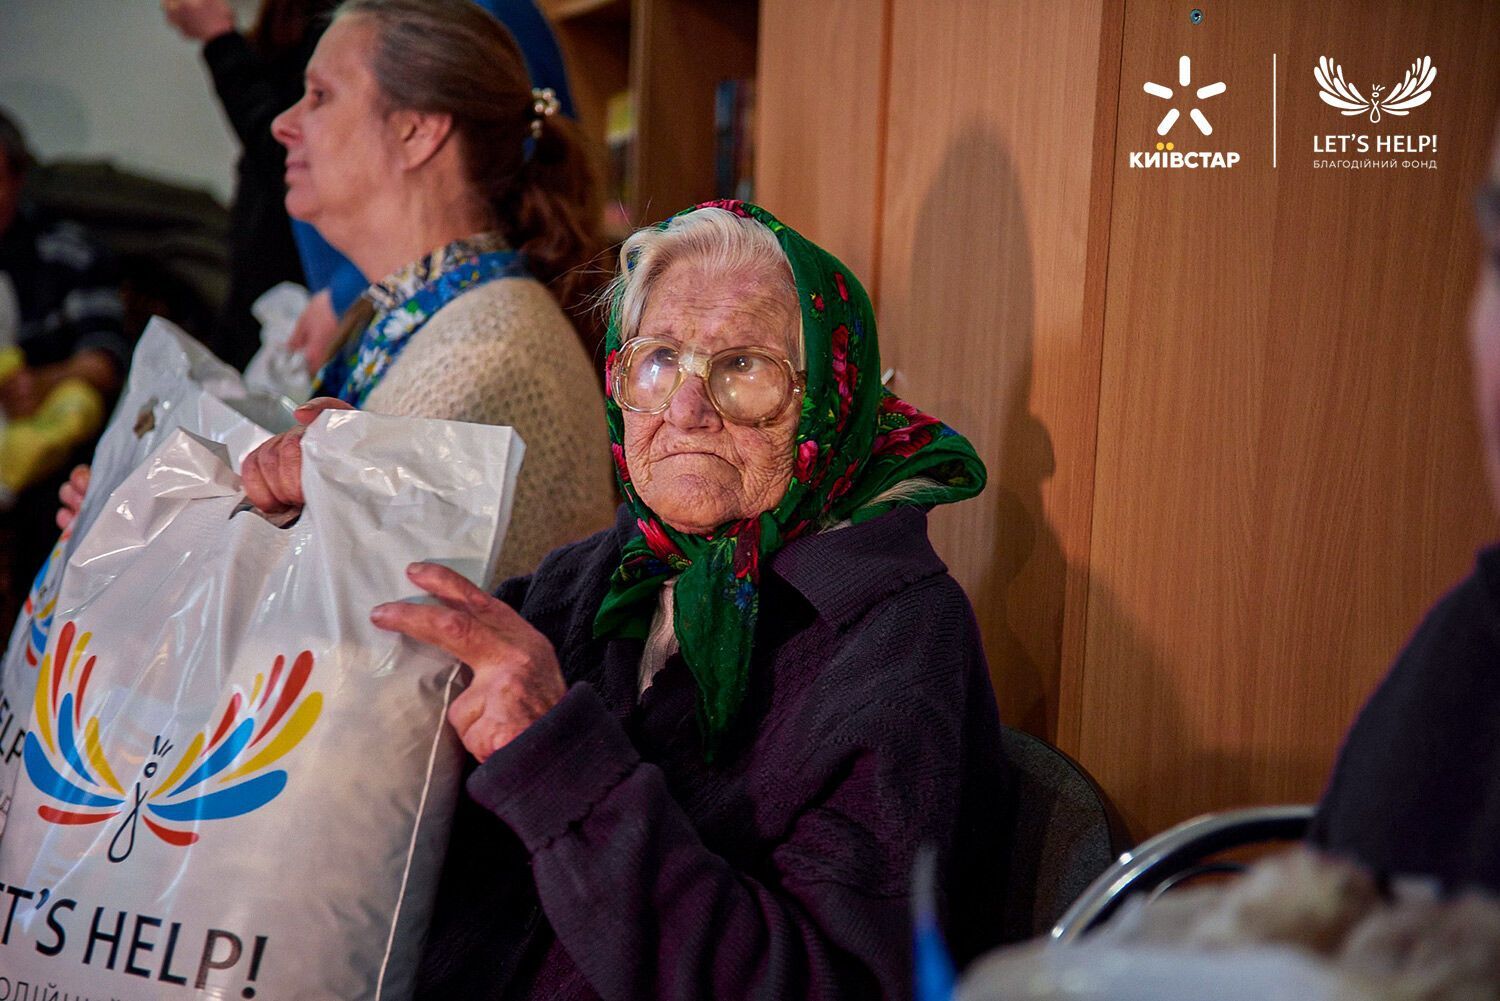 ''Киевстар'' вместе с волонтерами передали 1 млн грн на теплые вещи для пожилых людей